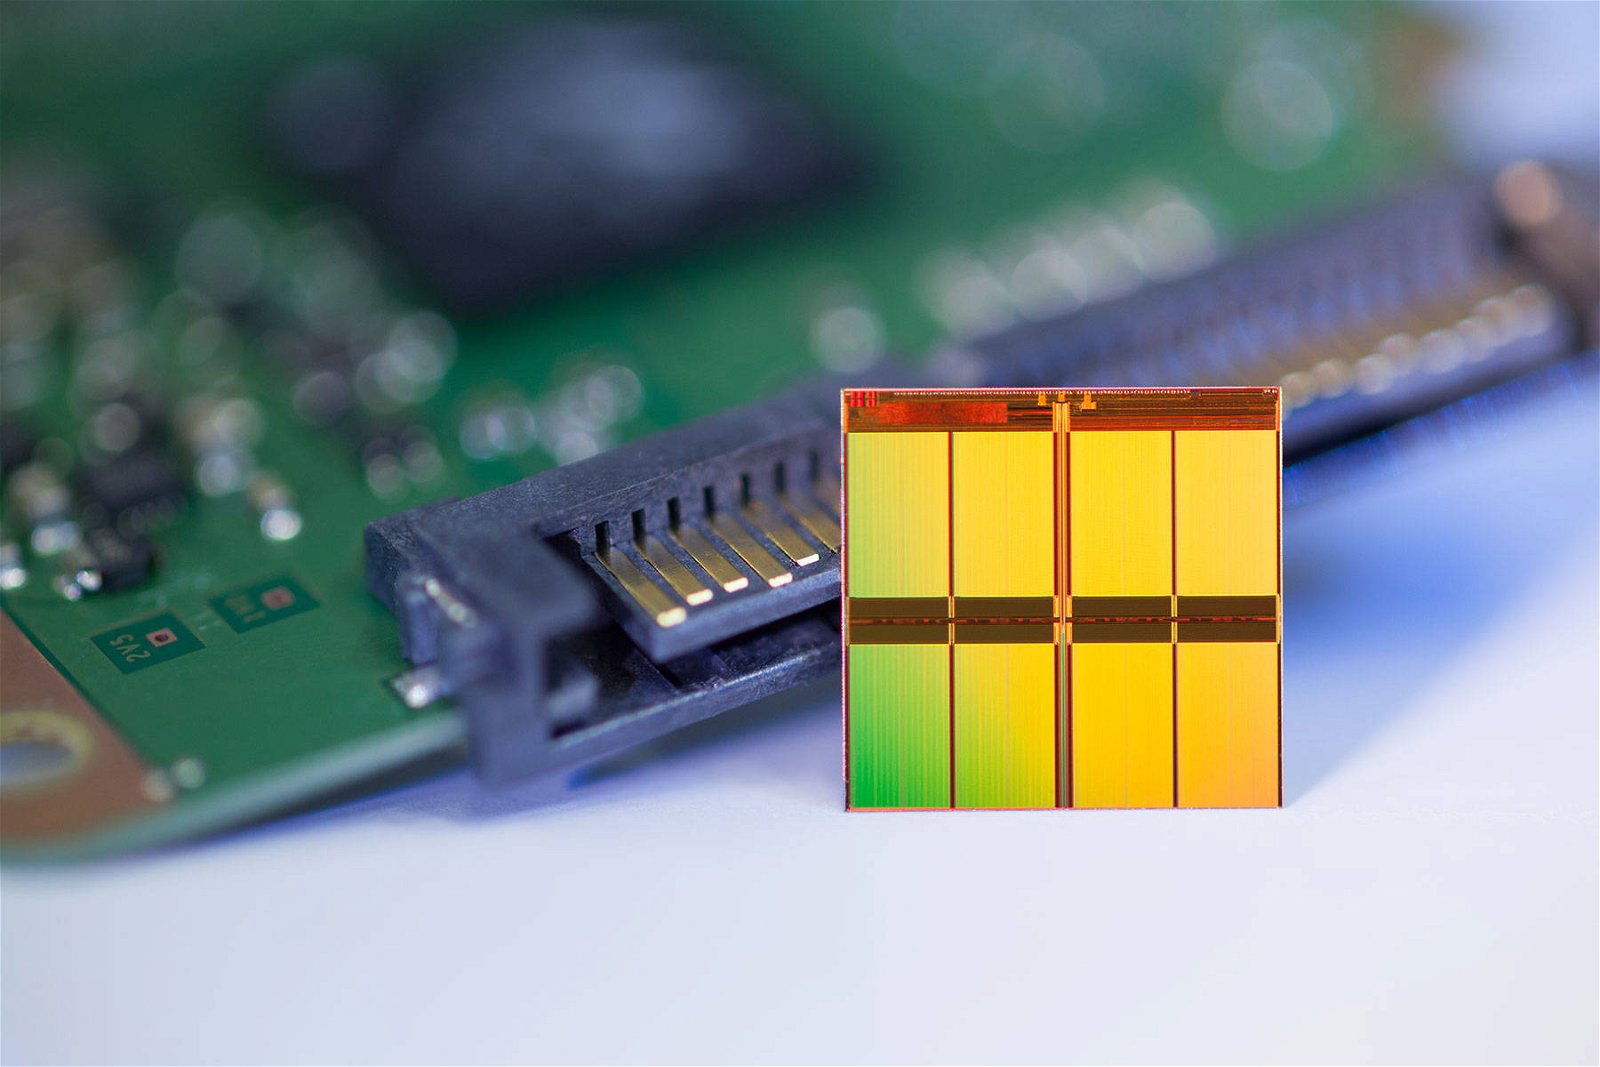 Immagine di Micron, presto 3D NAND a 128 layer basate su una nuova architettura